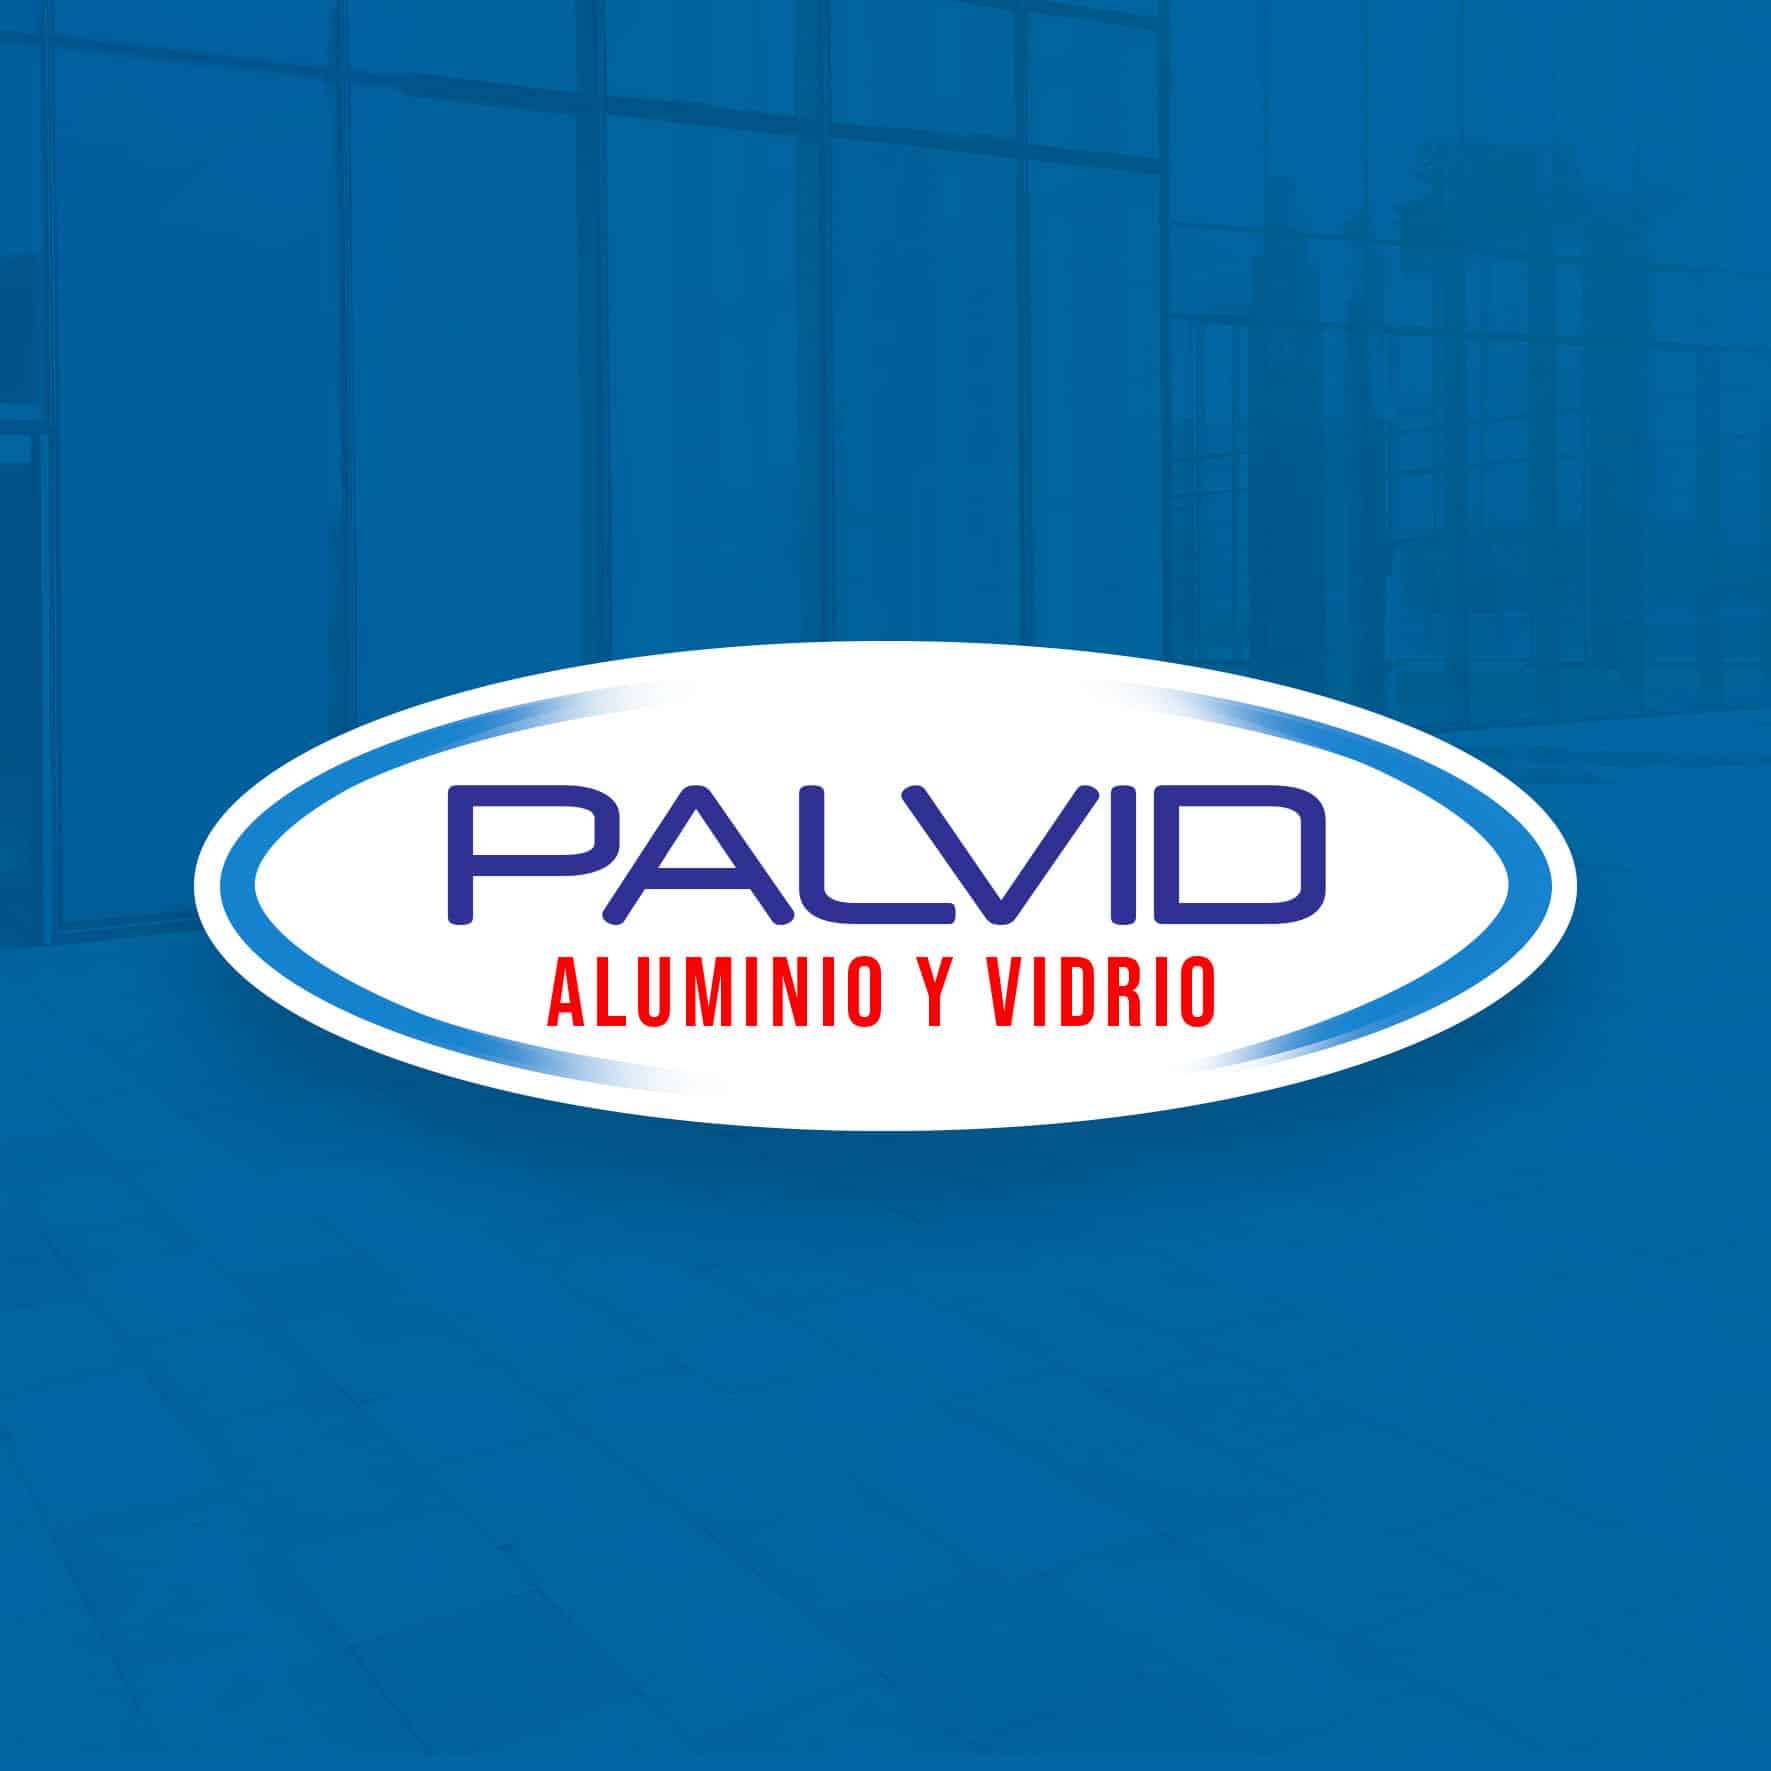 Taller de Aluminio y Vidrio Palvid